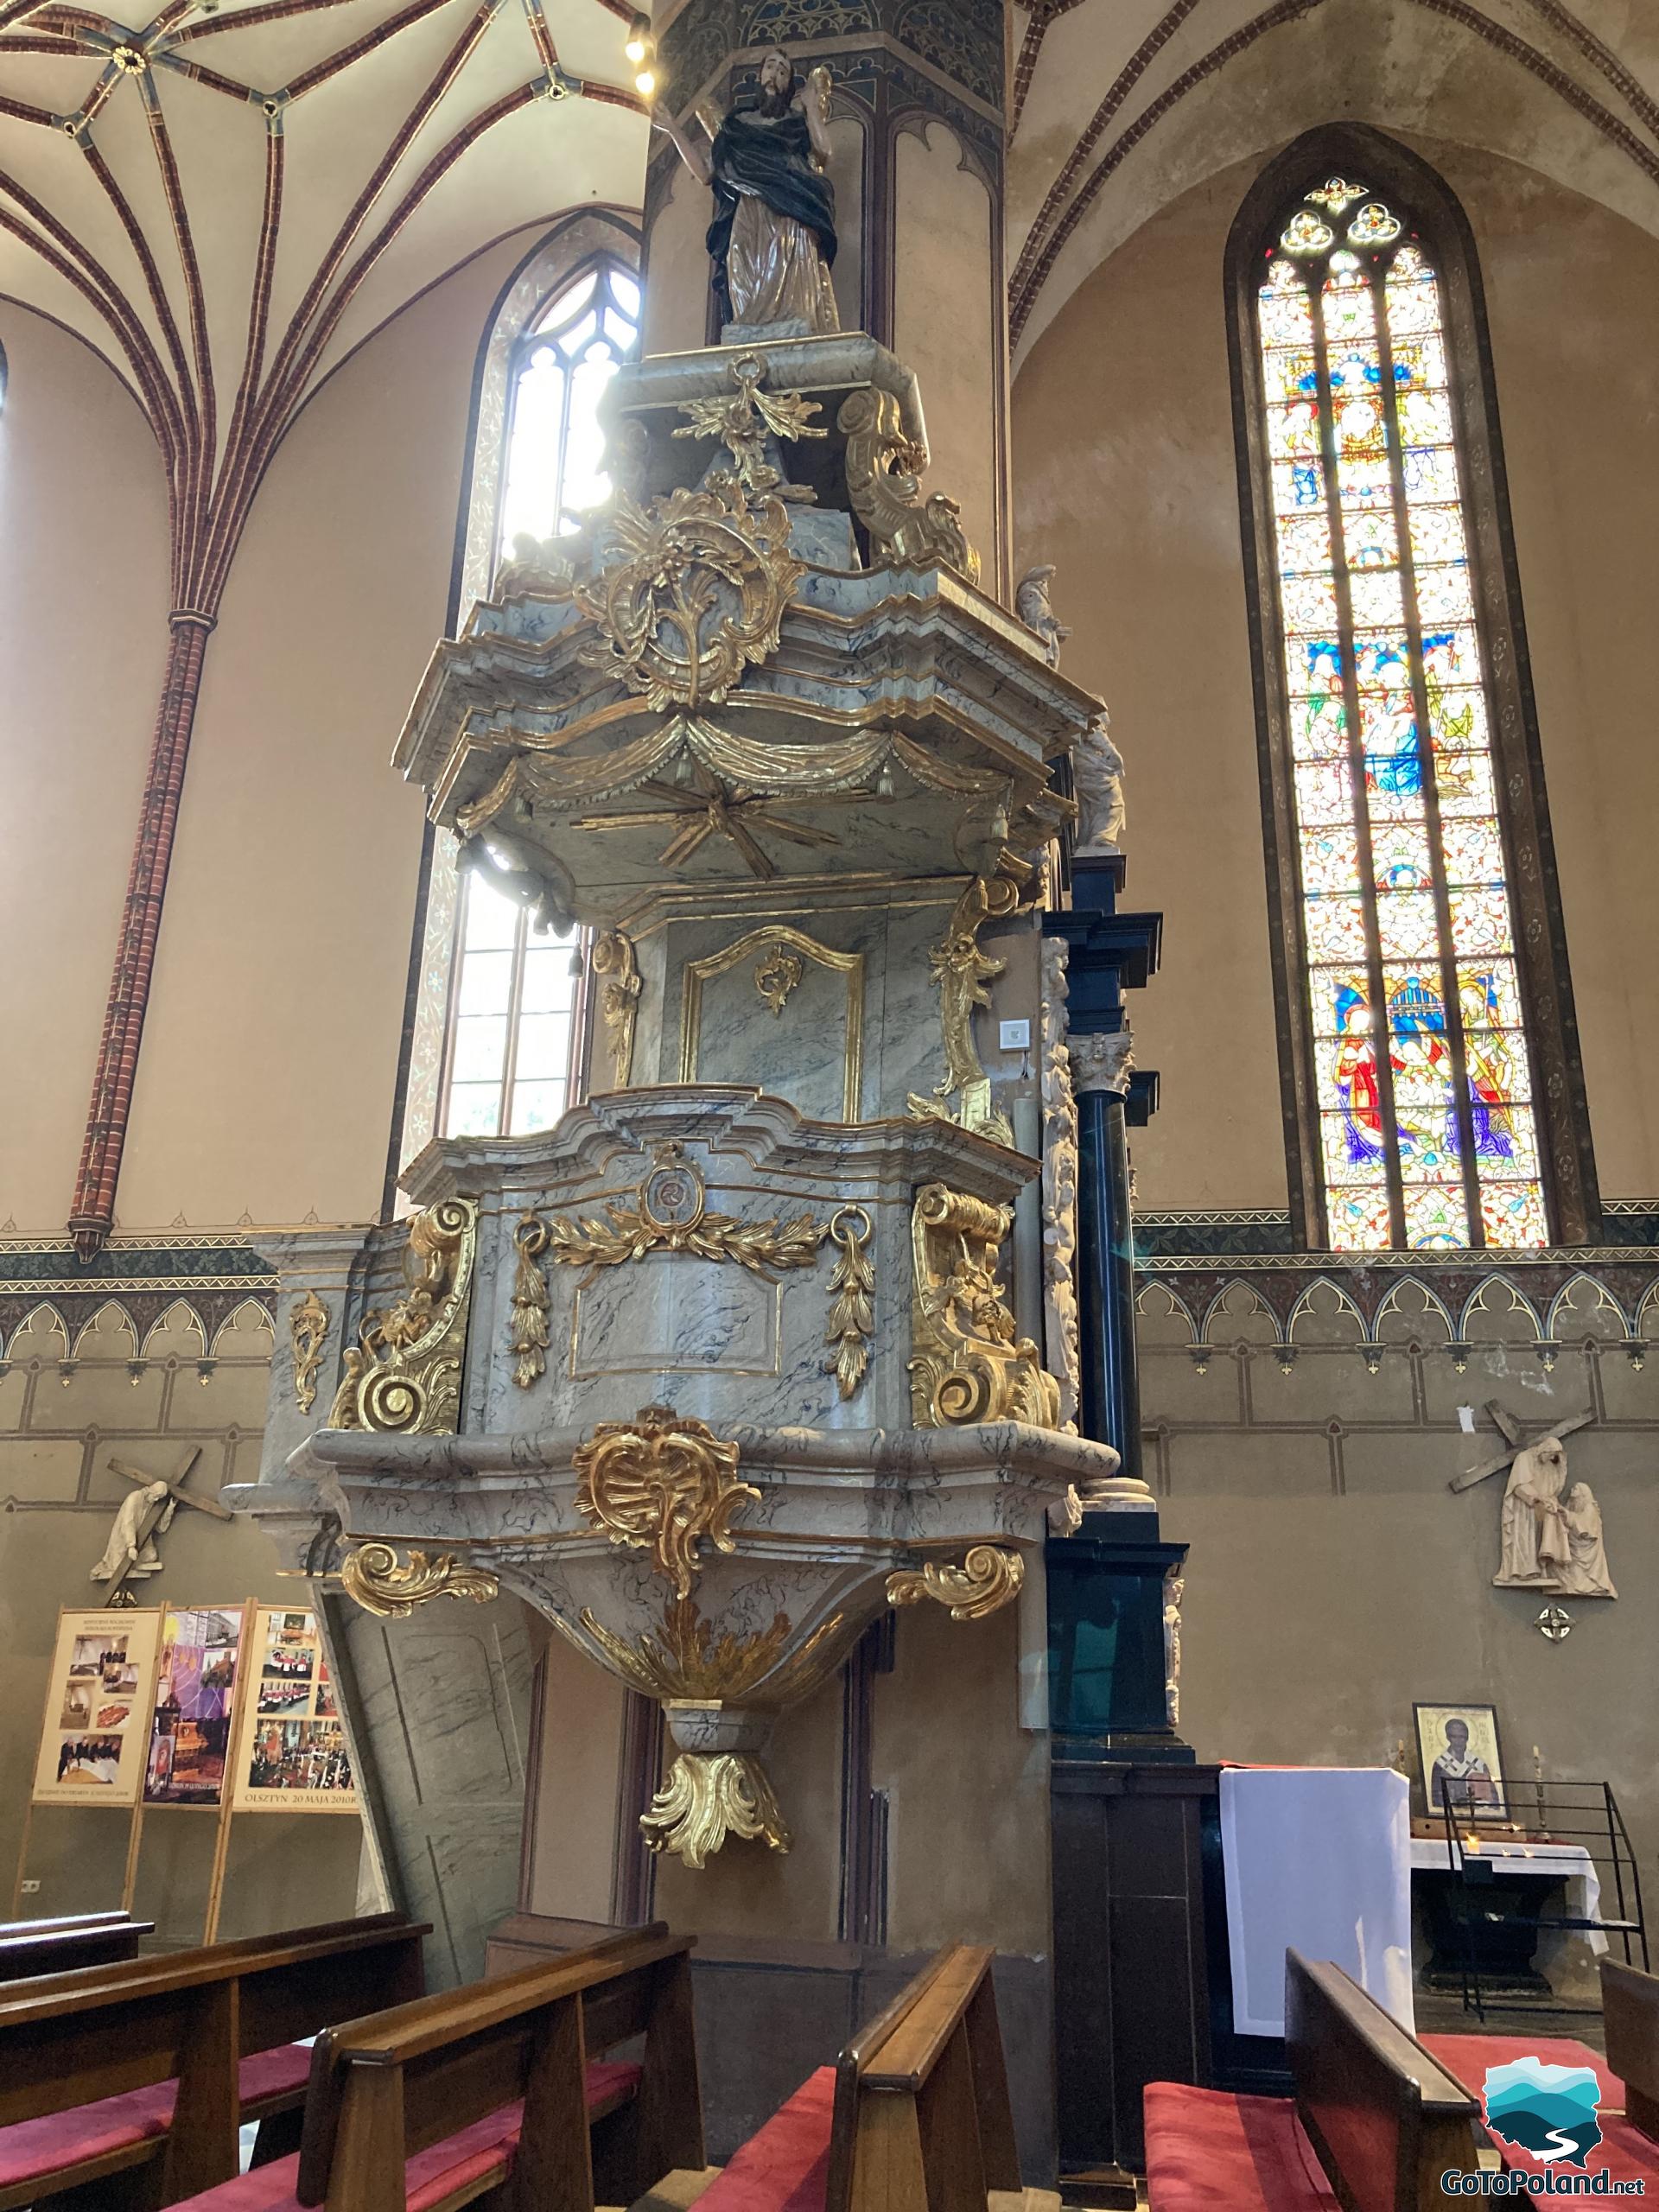 a historic pulpit